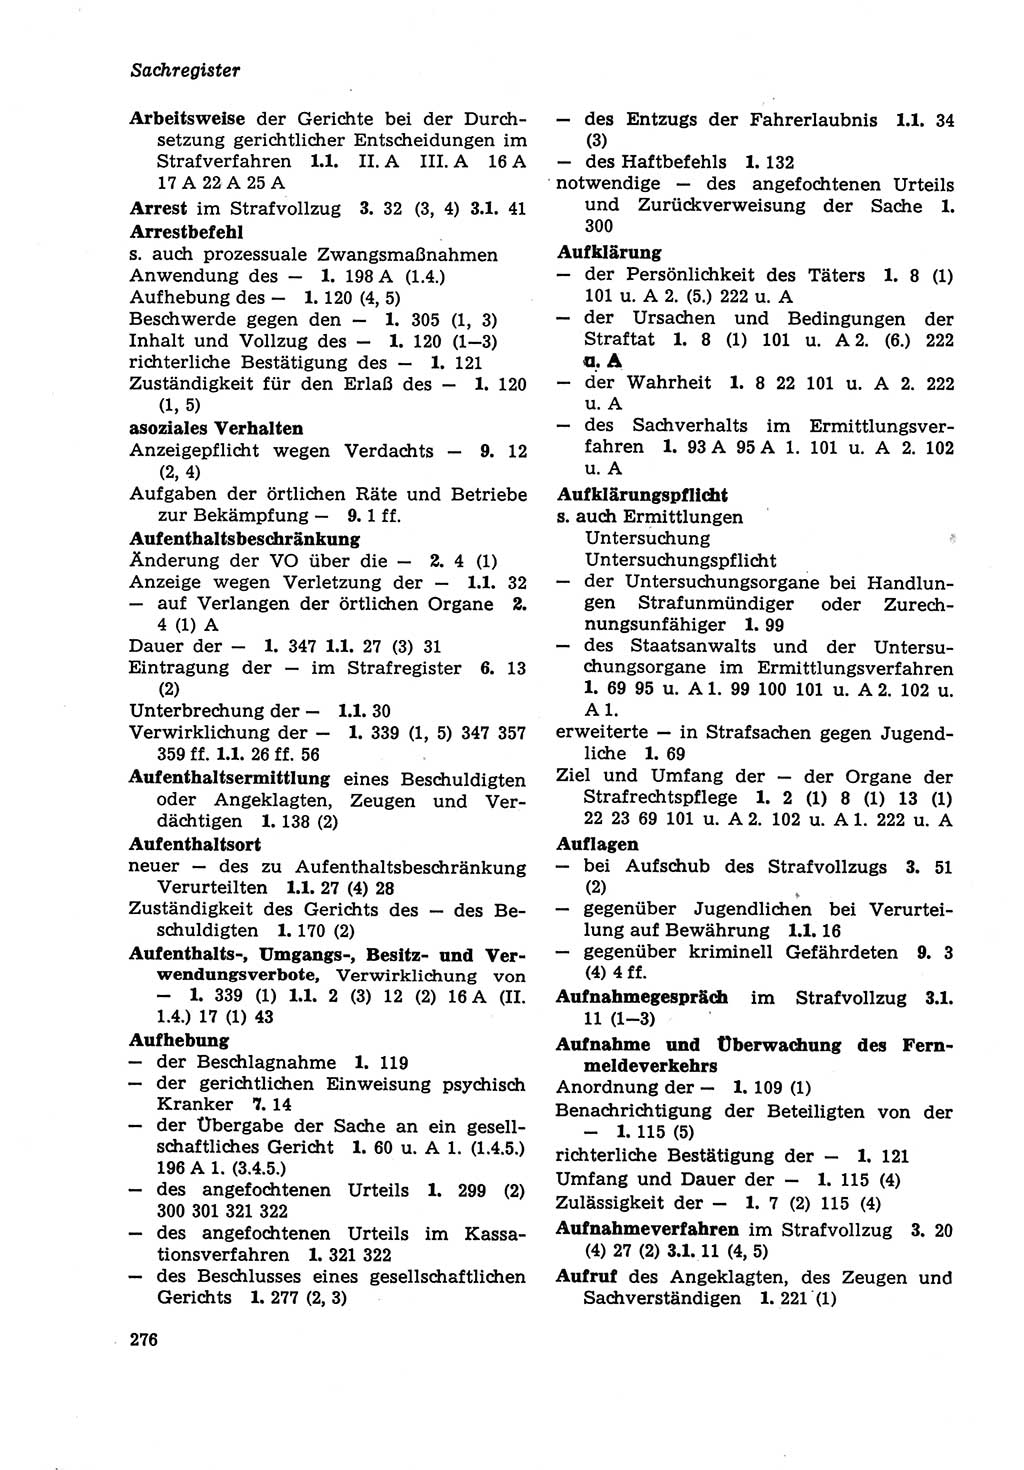 Strafprozeßordnung (StPO) der Deutschen Demokratischen Republik (DDR) sowie angrenzende Gesetze und Bestimmungen 1979, Seite 276 (StPO DDR Ges. Best. 1979, S. 276)